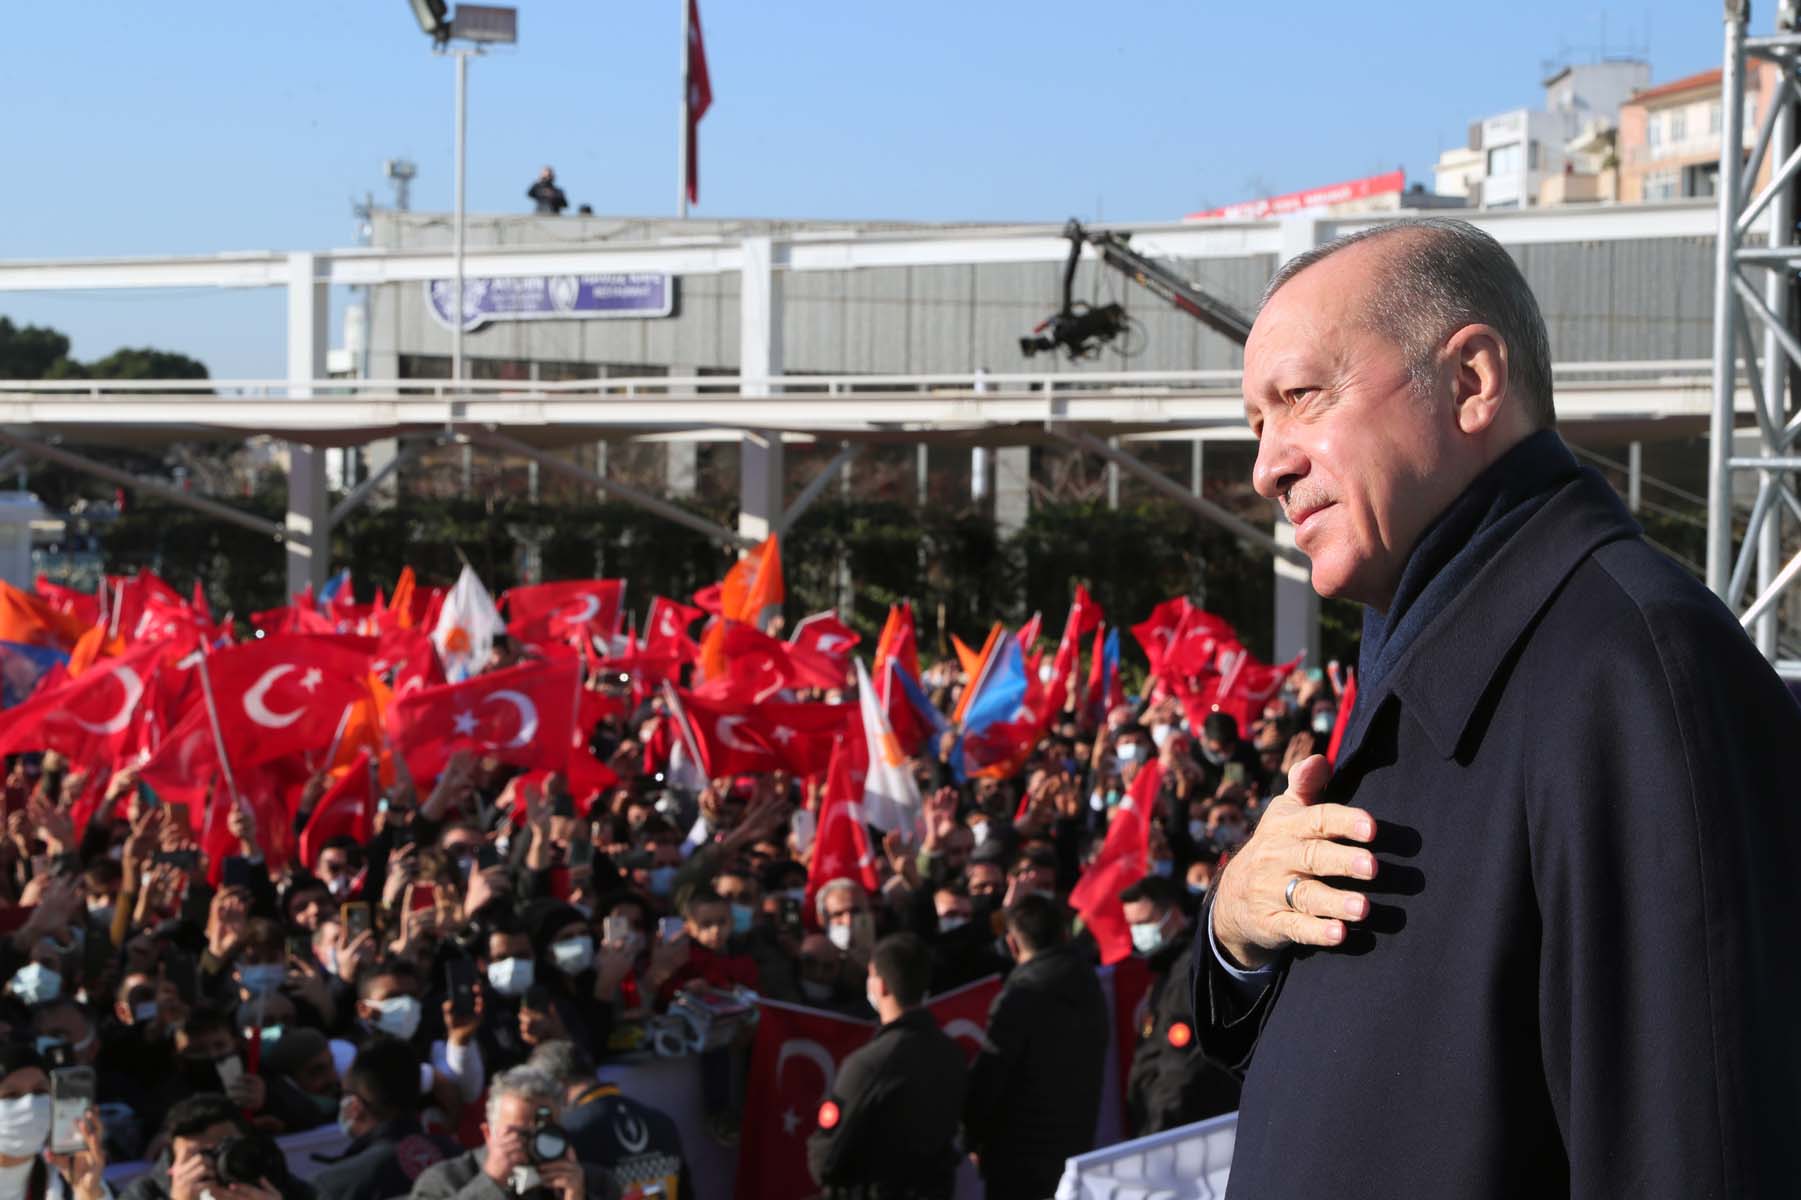 Cumhurbaşkanı Erdoğan, Aydın'da toplu açılış töreninde konuştu: Kura endeksli Türk Lirası dedik tüm oyunları bozuldu, başaramayacaksınız